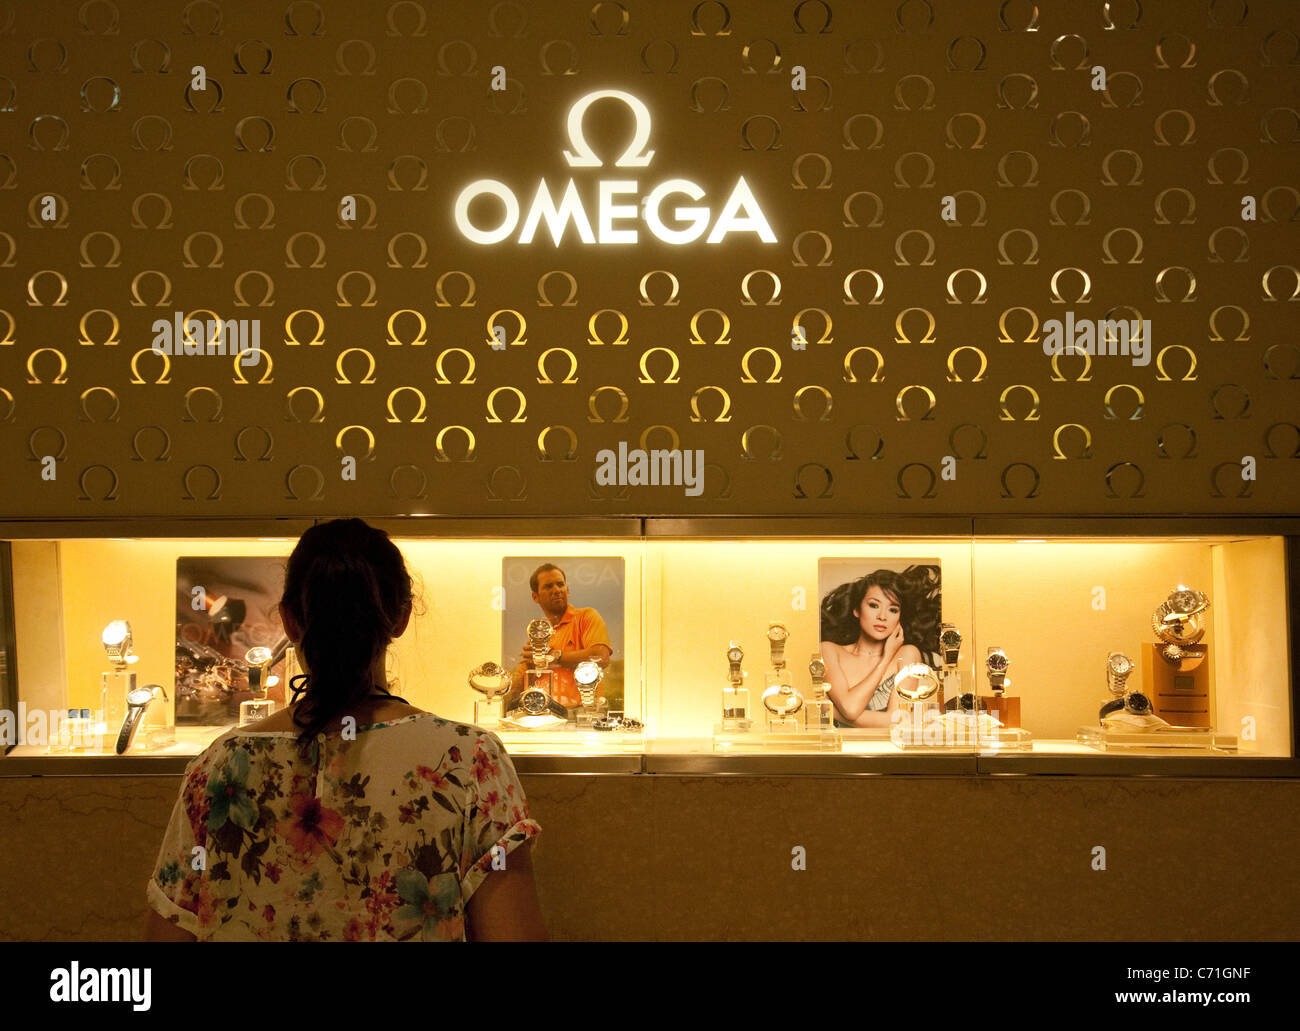 omega showroom